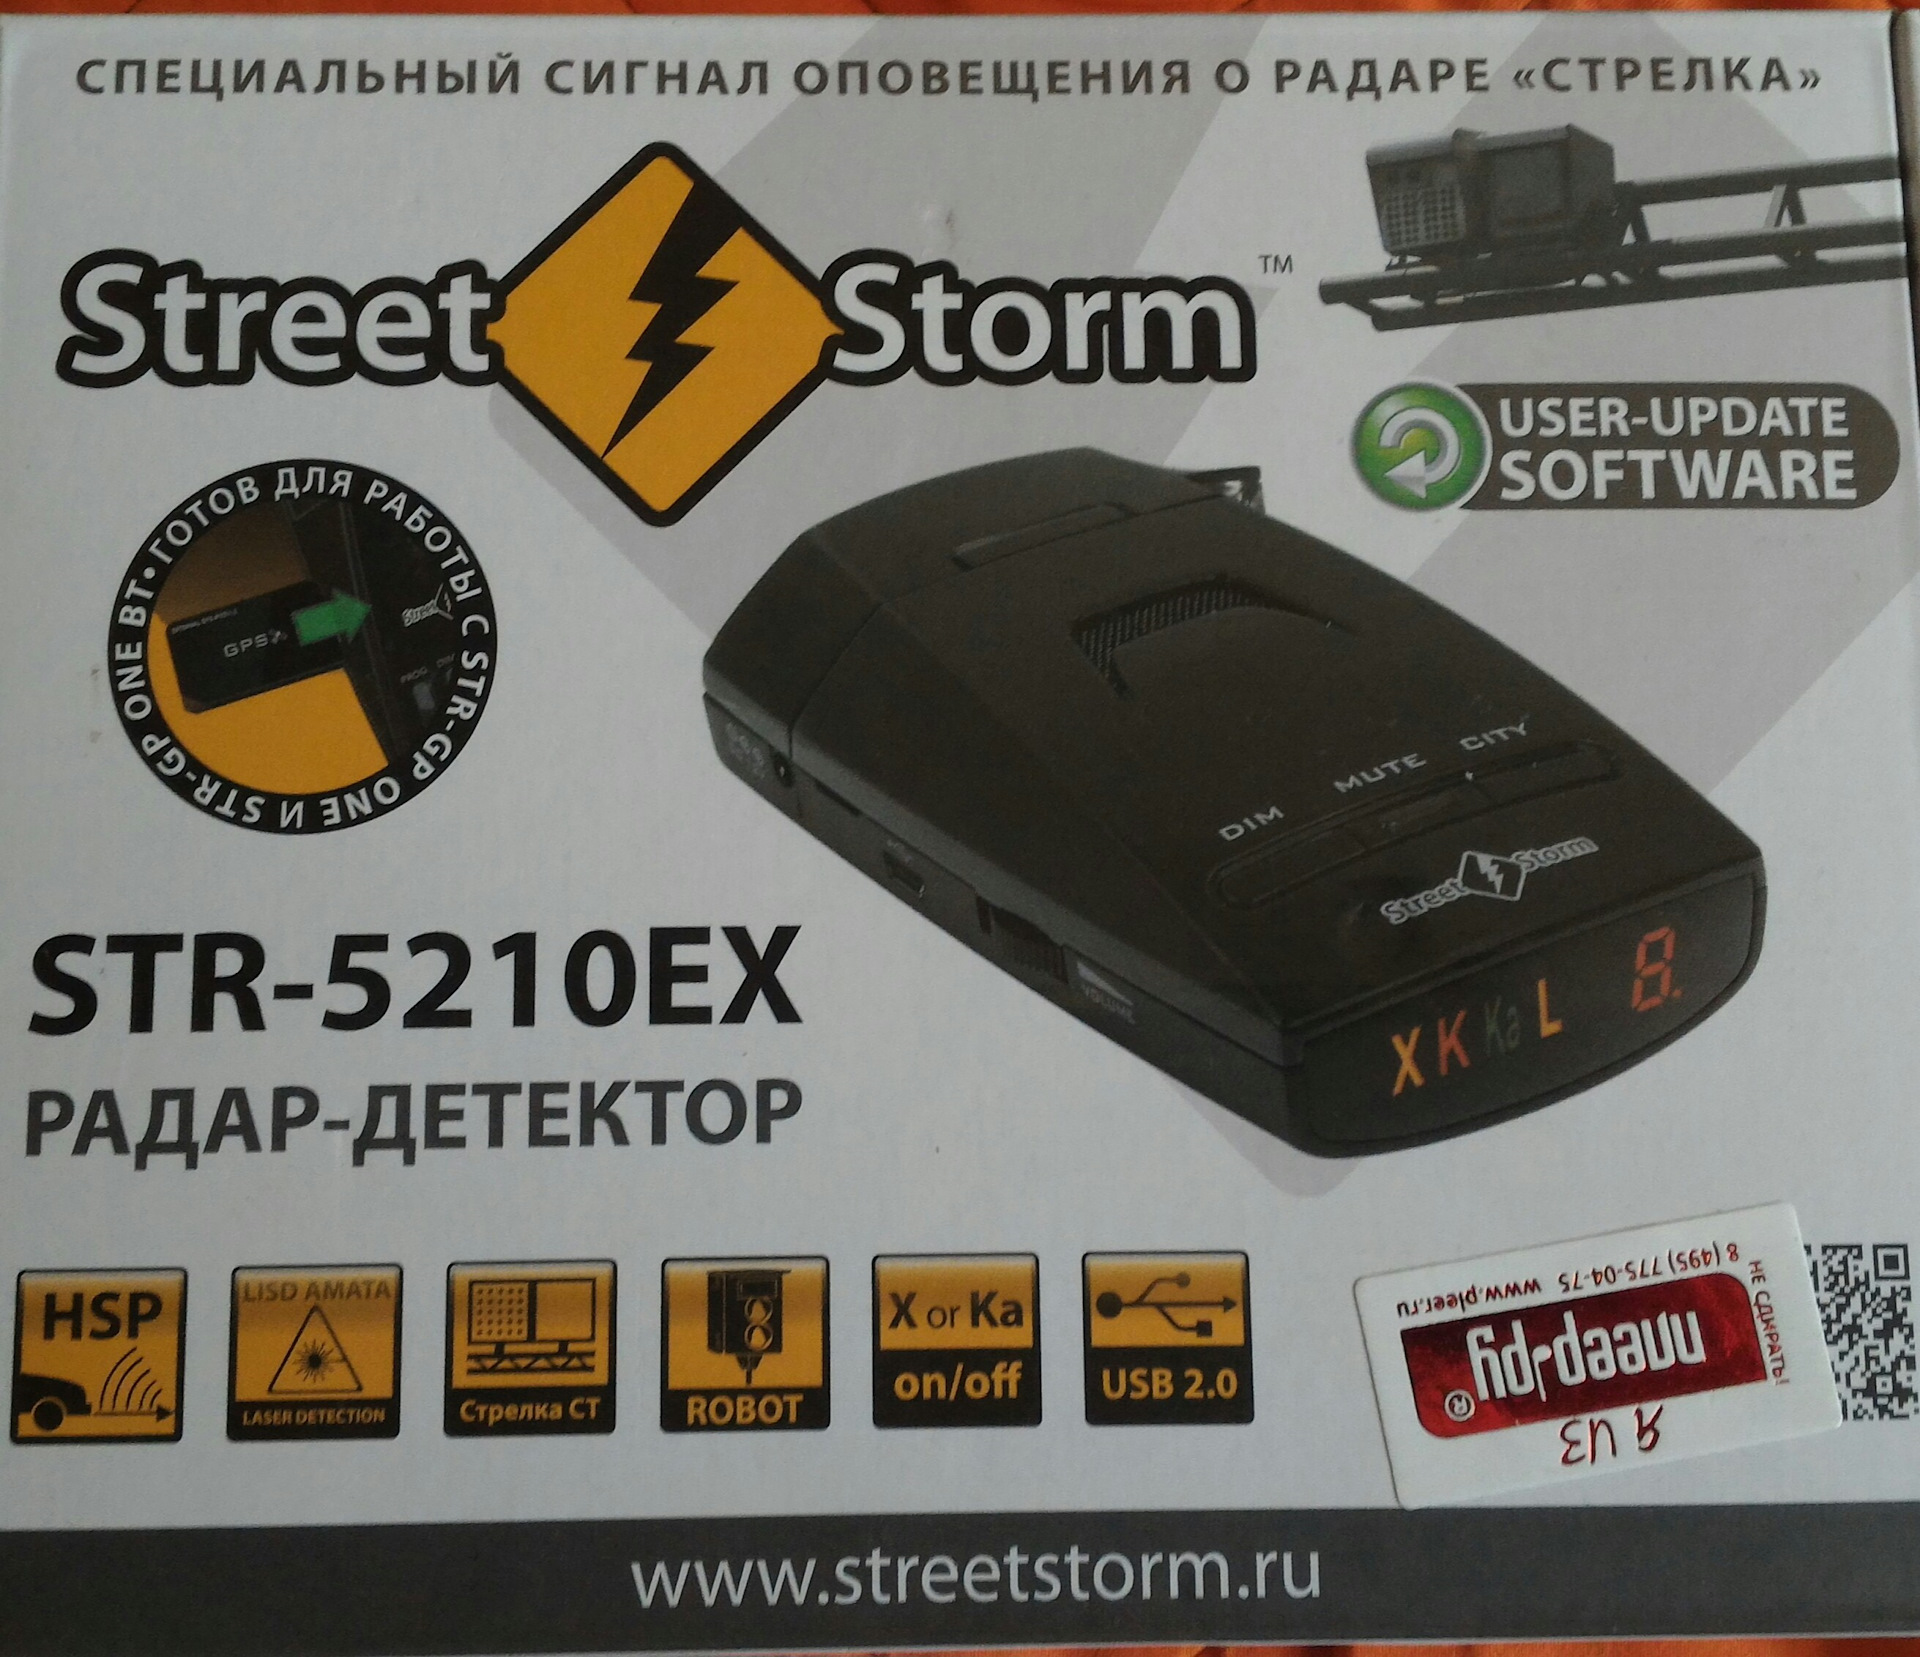 Радар оповещение. Радар-детектор Street Storm Str-5210ex Signature Edition. Street Storm Str-5210ex. Радар-детектор Street Storm Str-5210ex GPS Uni Kit. Антирадар Street Storm Str-5210ex GP one Kit (BT) GPS внешний модуль, радар-детектор.